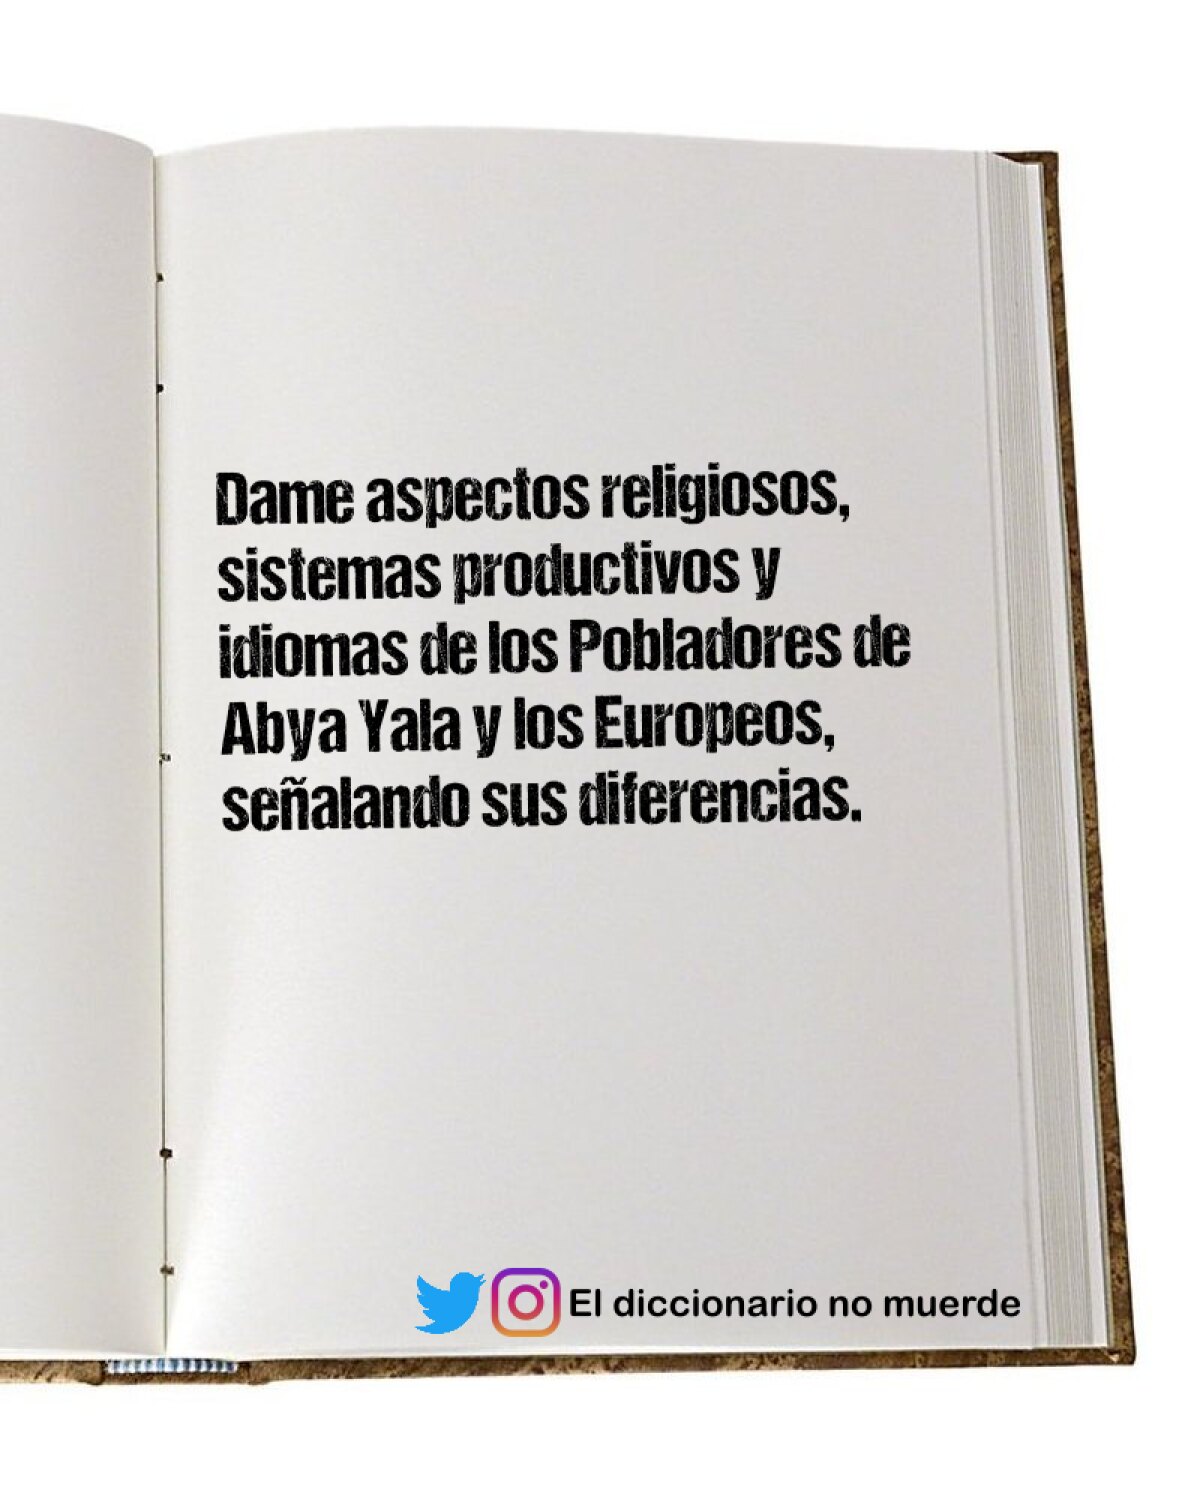 Dame aspectos religiosos, sistemas productivos y idiomas de los Pobladores de Abya Yala y los Europeos, señalando sus diferencias.